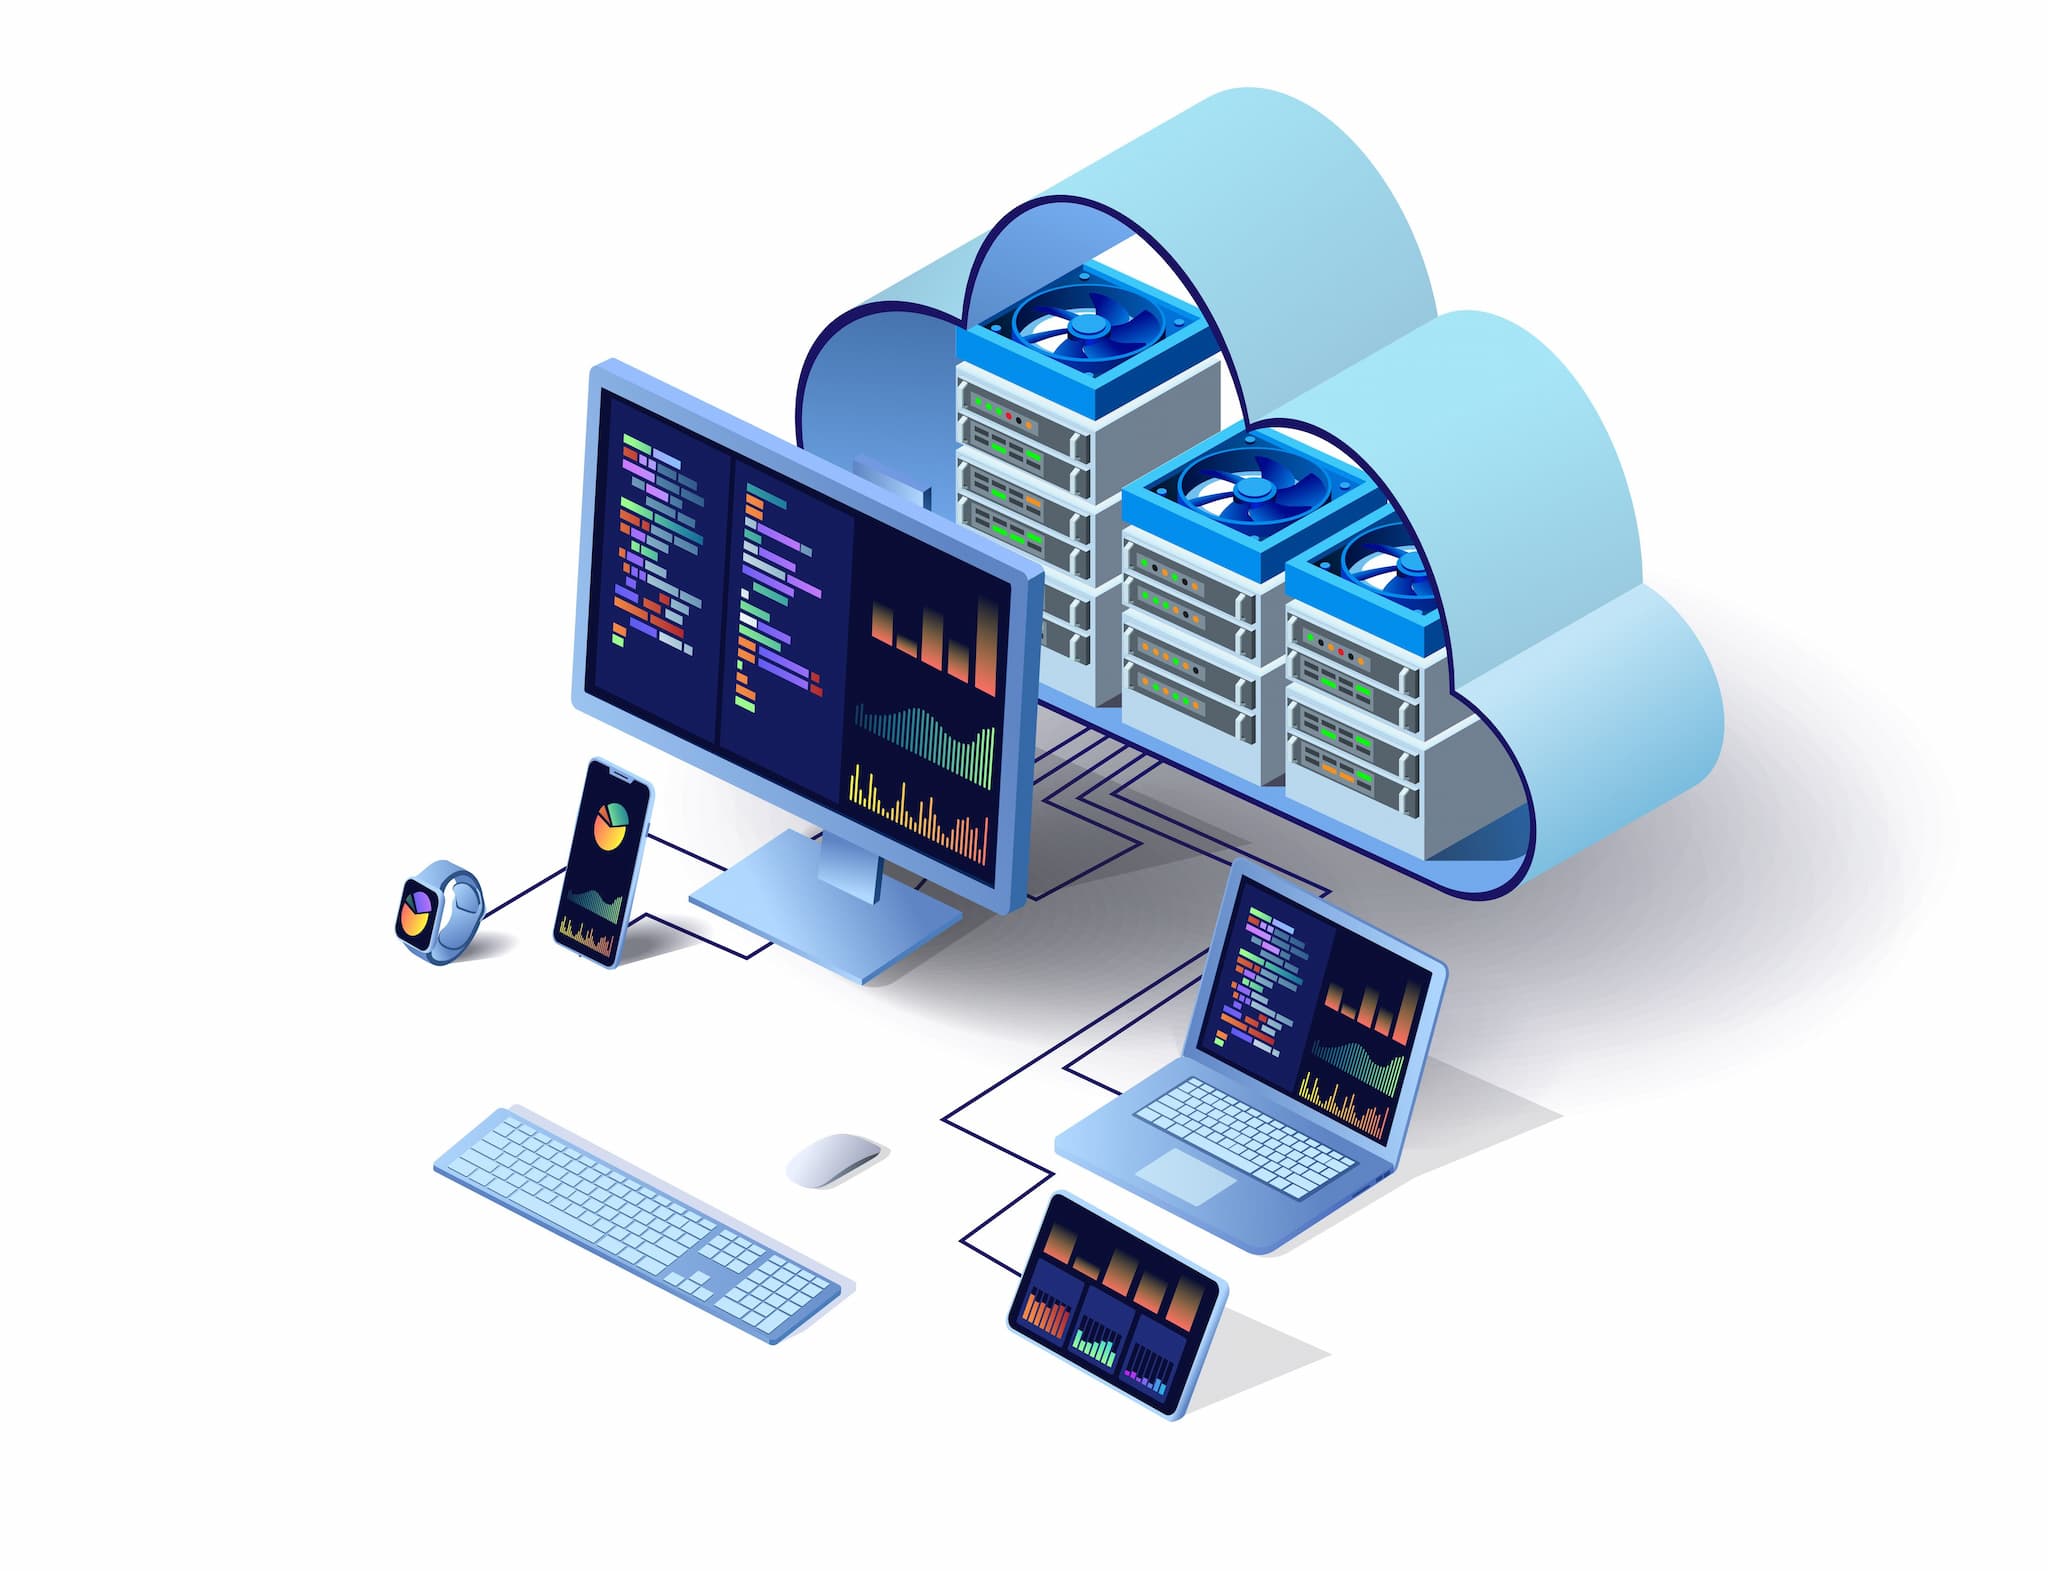 IoT-Geräte, die an die Cloud angeschlossen sind, als Vertreter des Cloud Computing